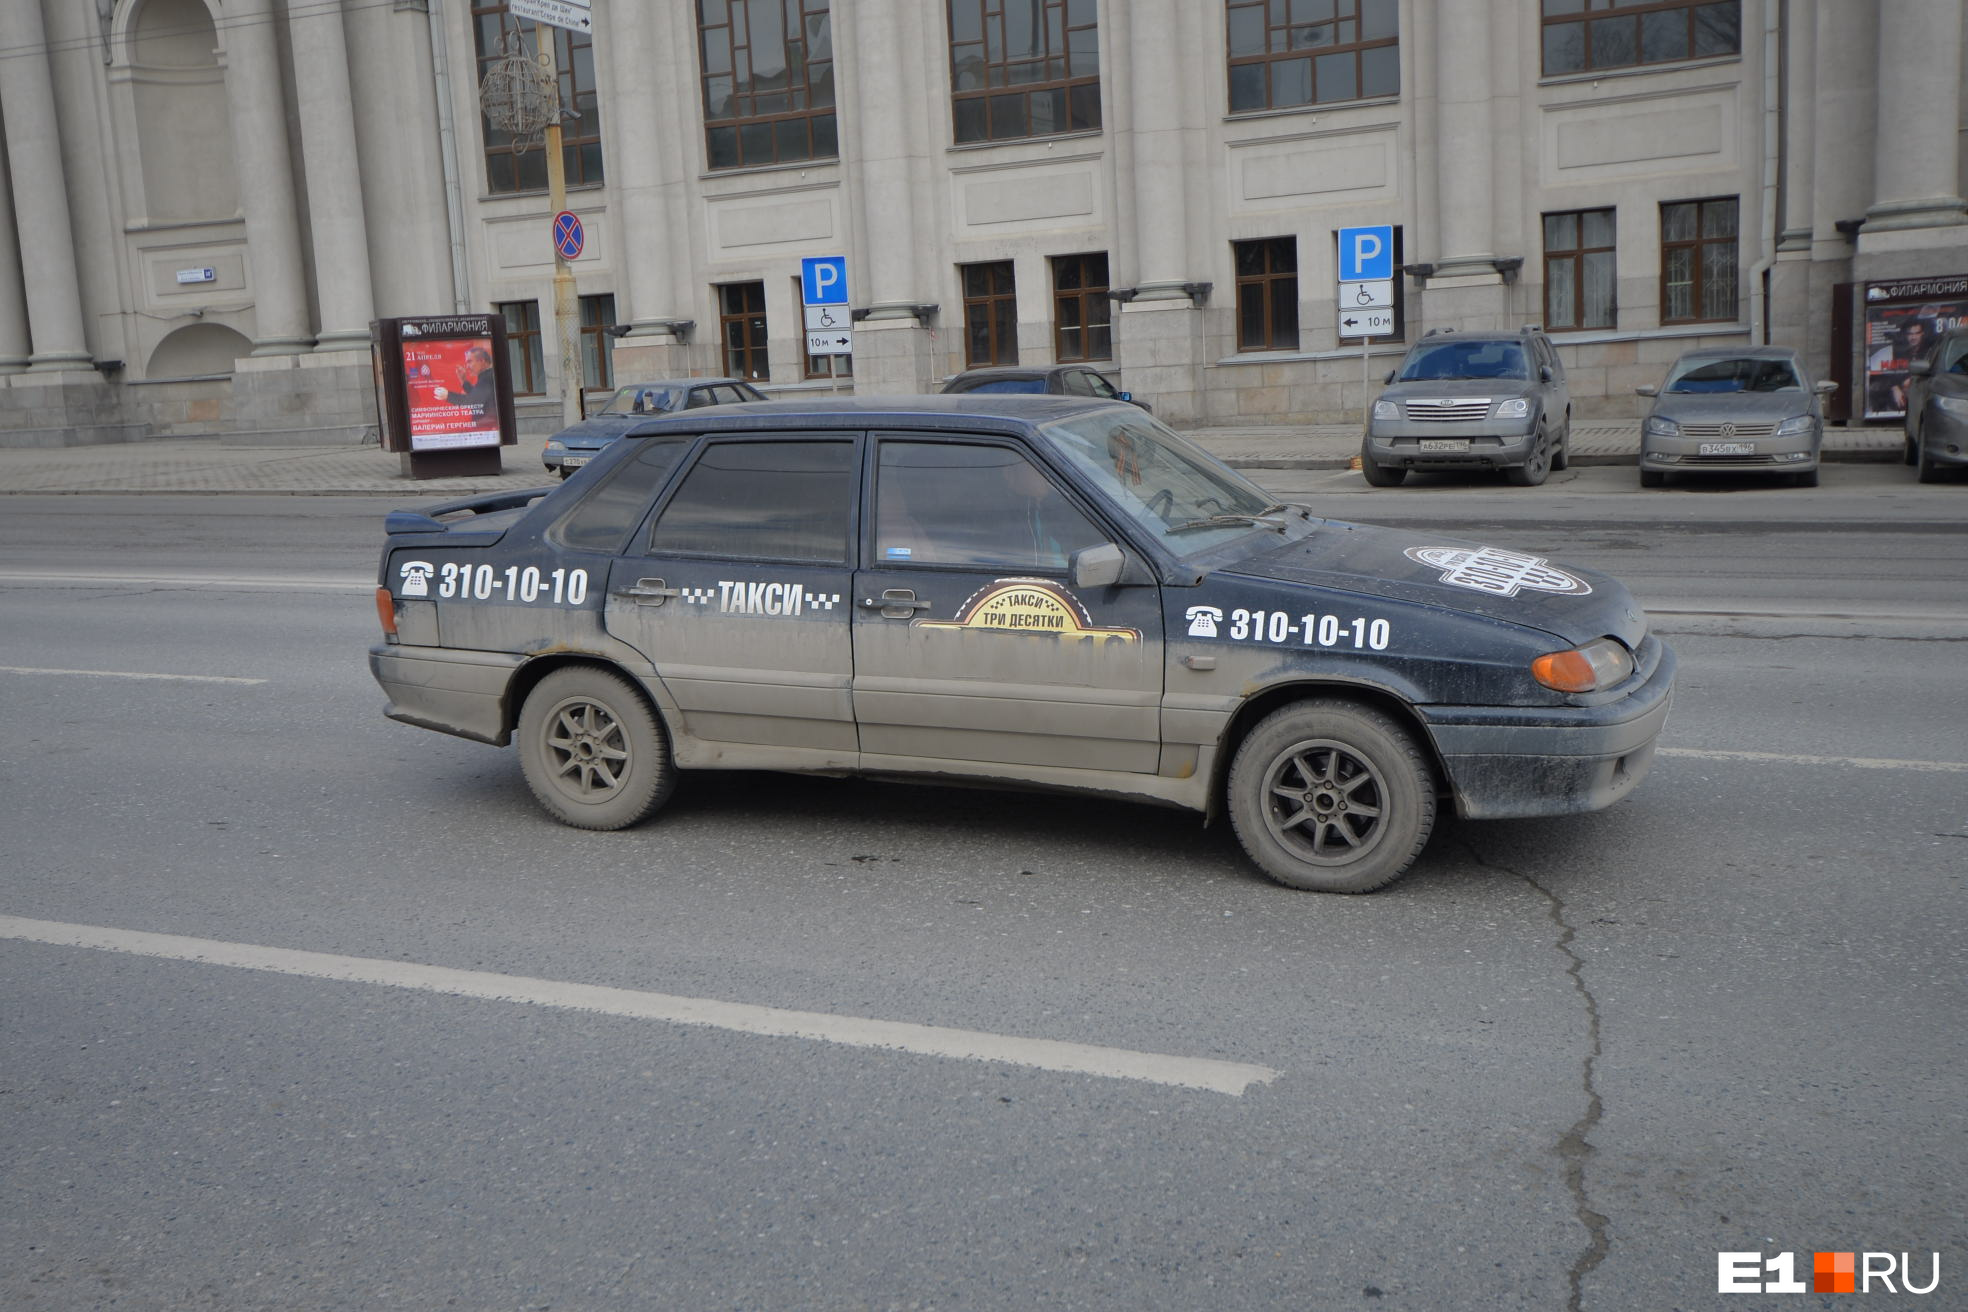 Восемь сотен за поездку: в Екатеринбурге из-за жары подскочили цены на такси